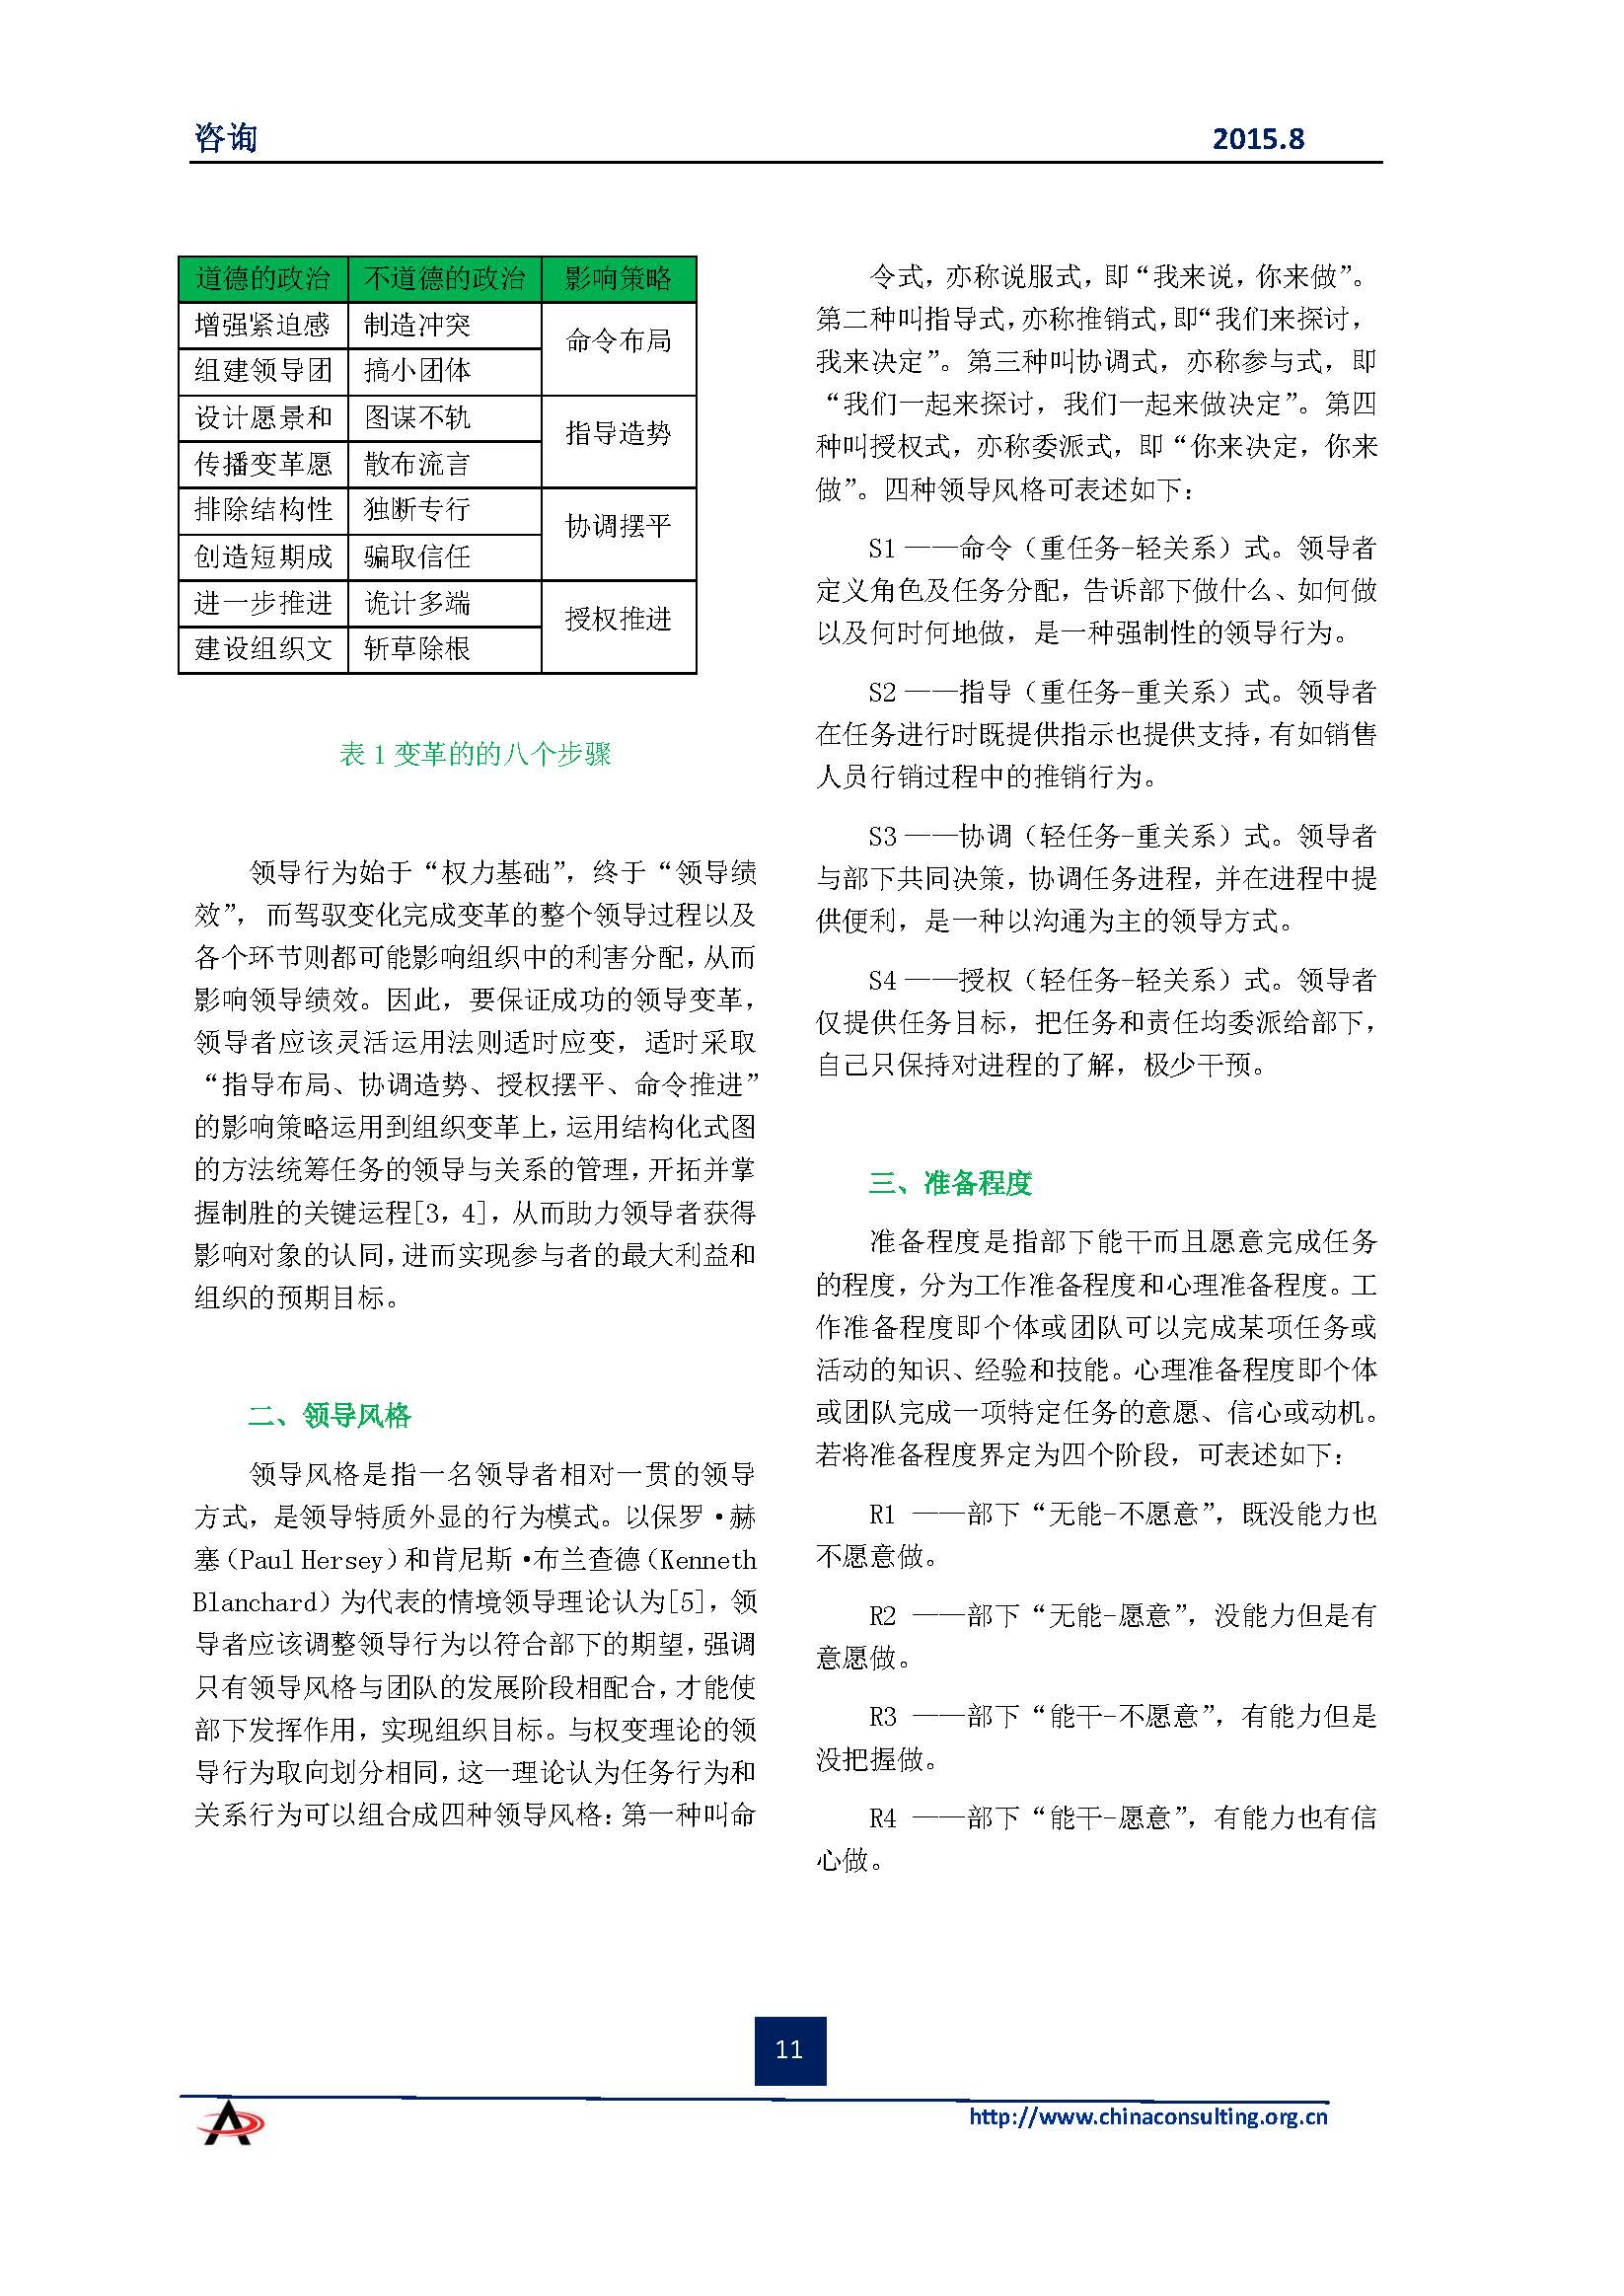 中国科技咨询协会会刊（第四十期）初稿_页面_13.jpg